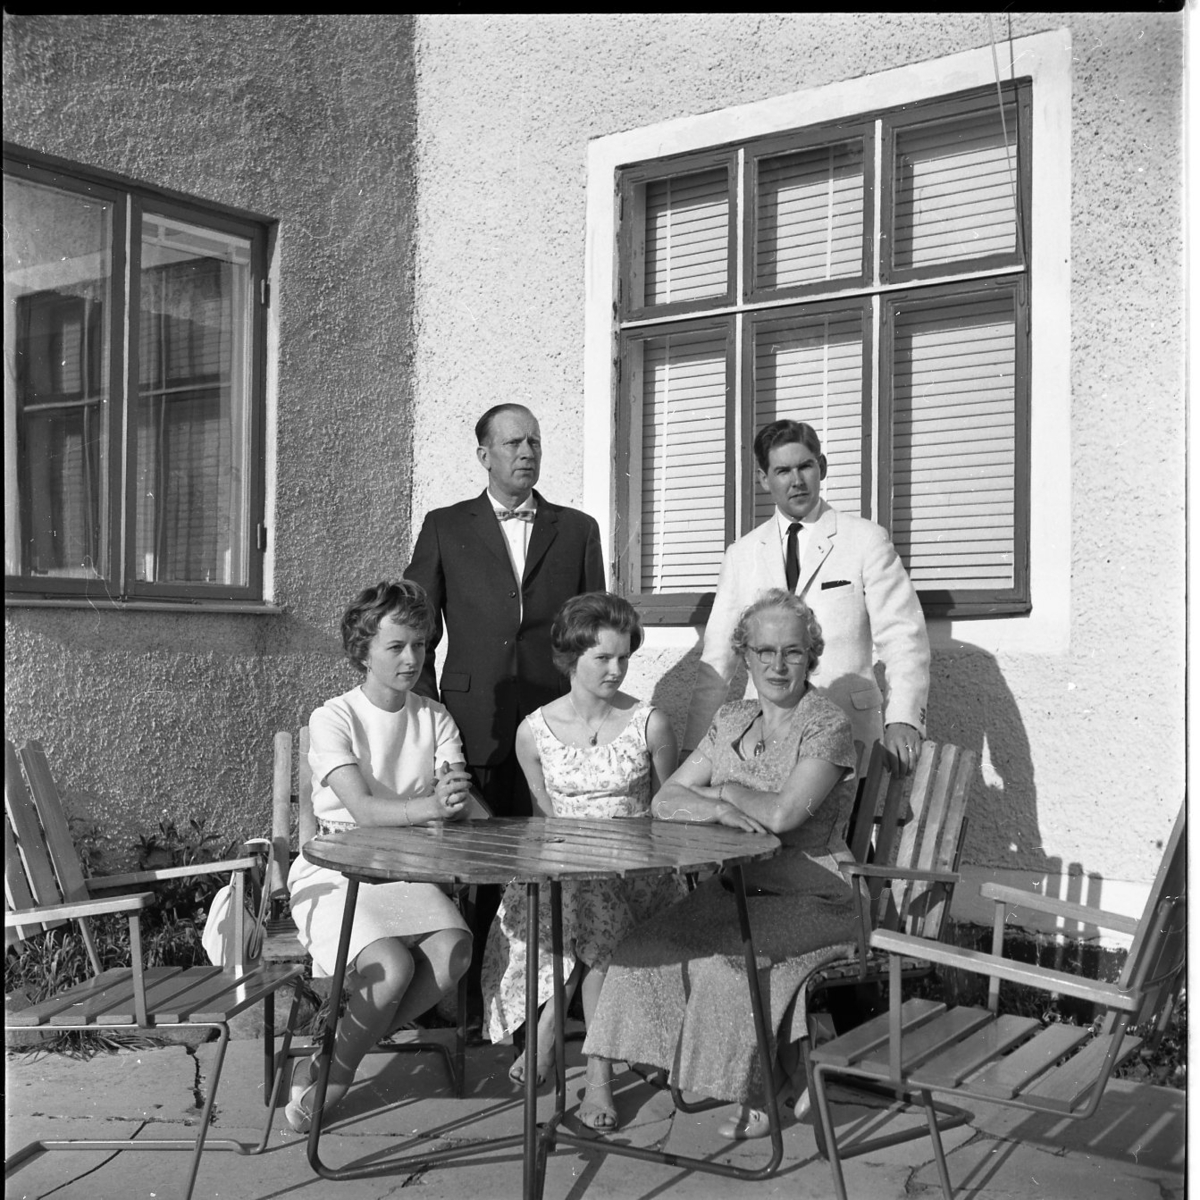 Fem finklädda personer befinner sig runt en trädgårdsmöbel, tre sitter och fyra står. Solen skiner på dem.